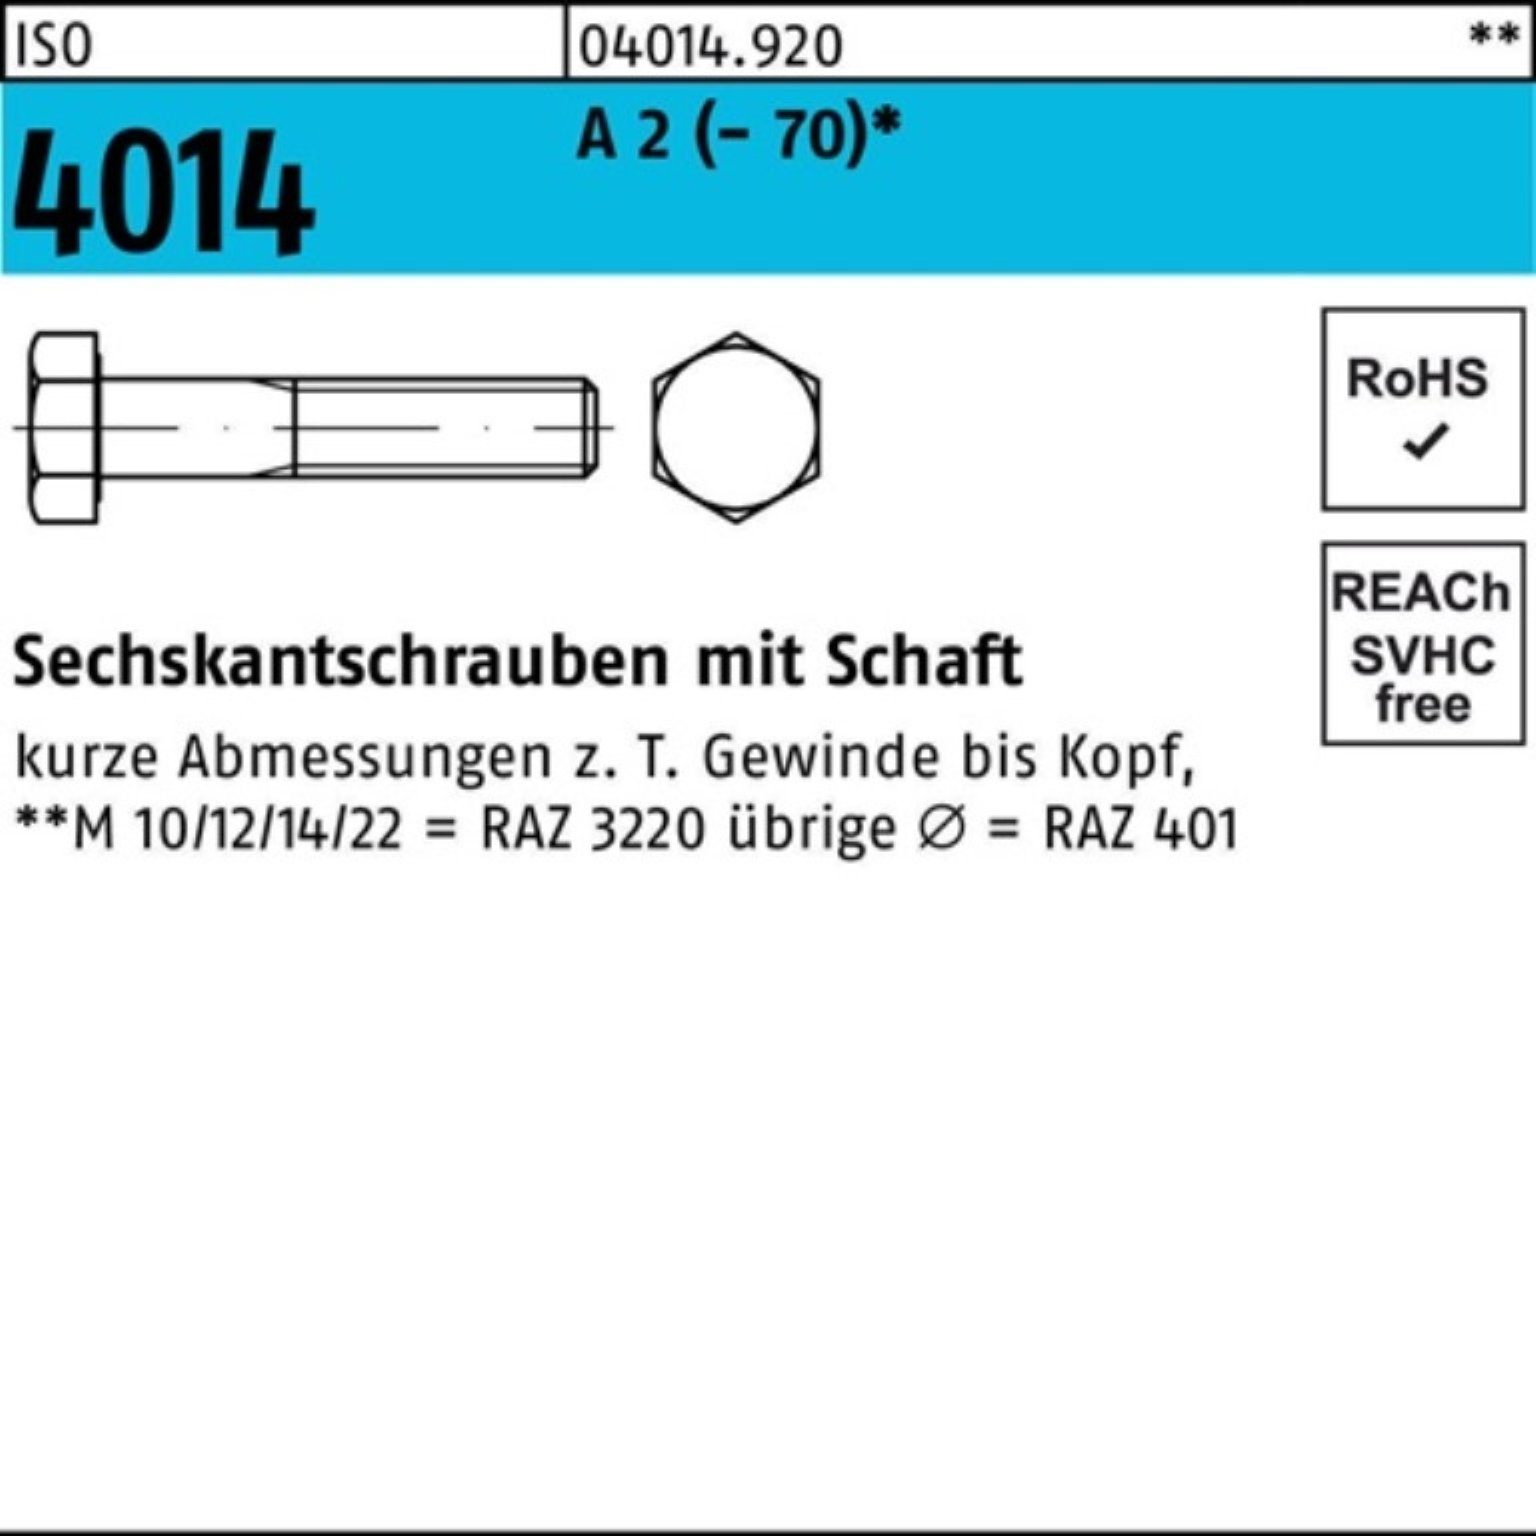 Bufab Sechskantschraube 100er Pack Sechskantschraube 2 A 4014 Stü 1 Schaft (70) M24x ISO 75